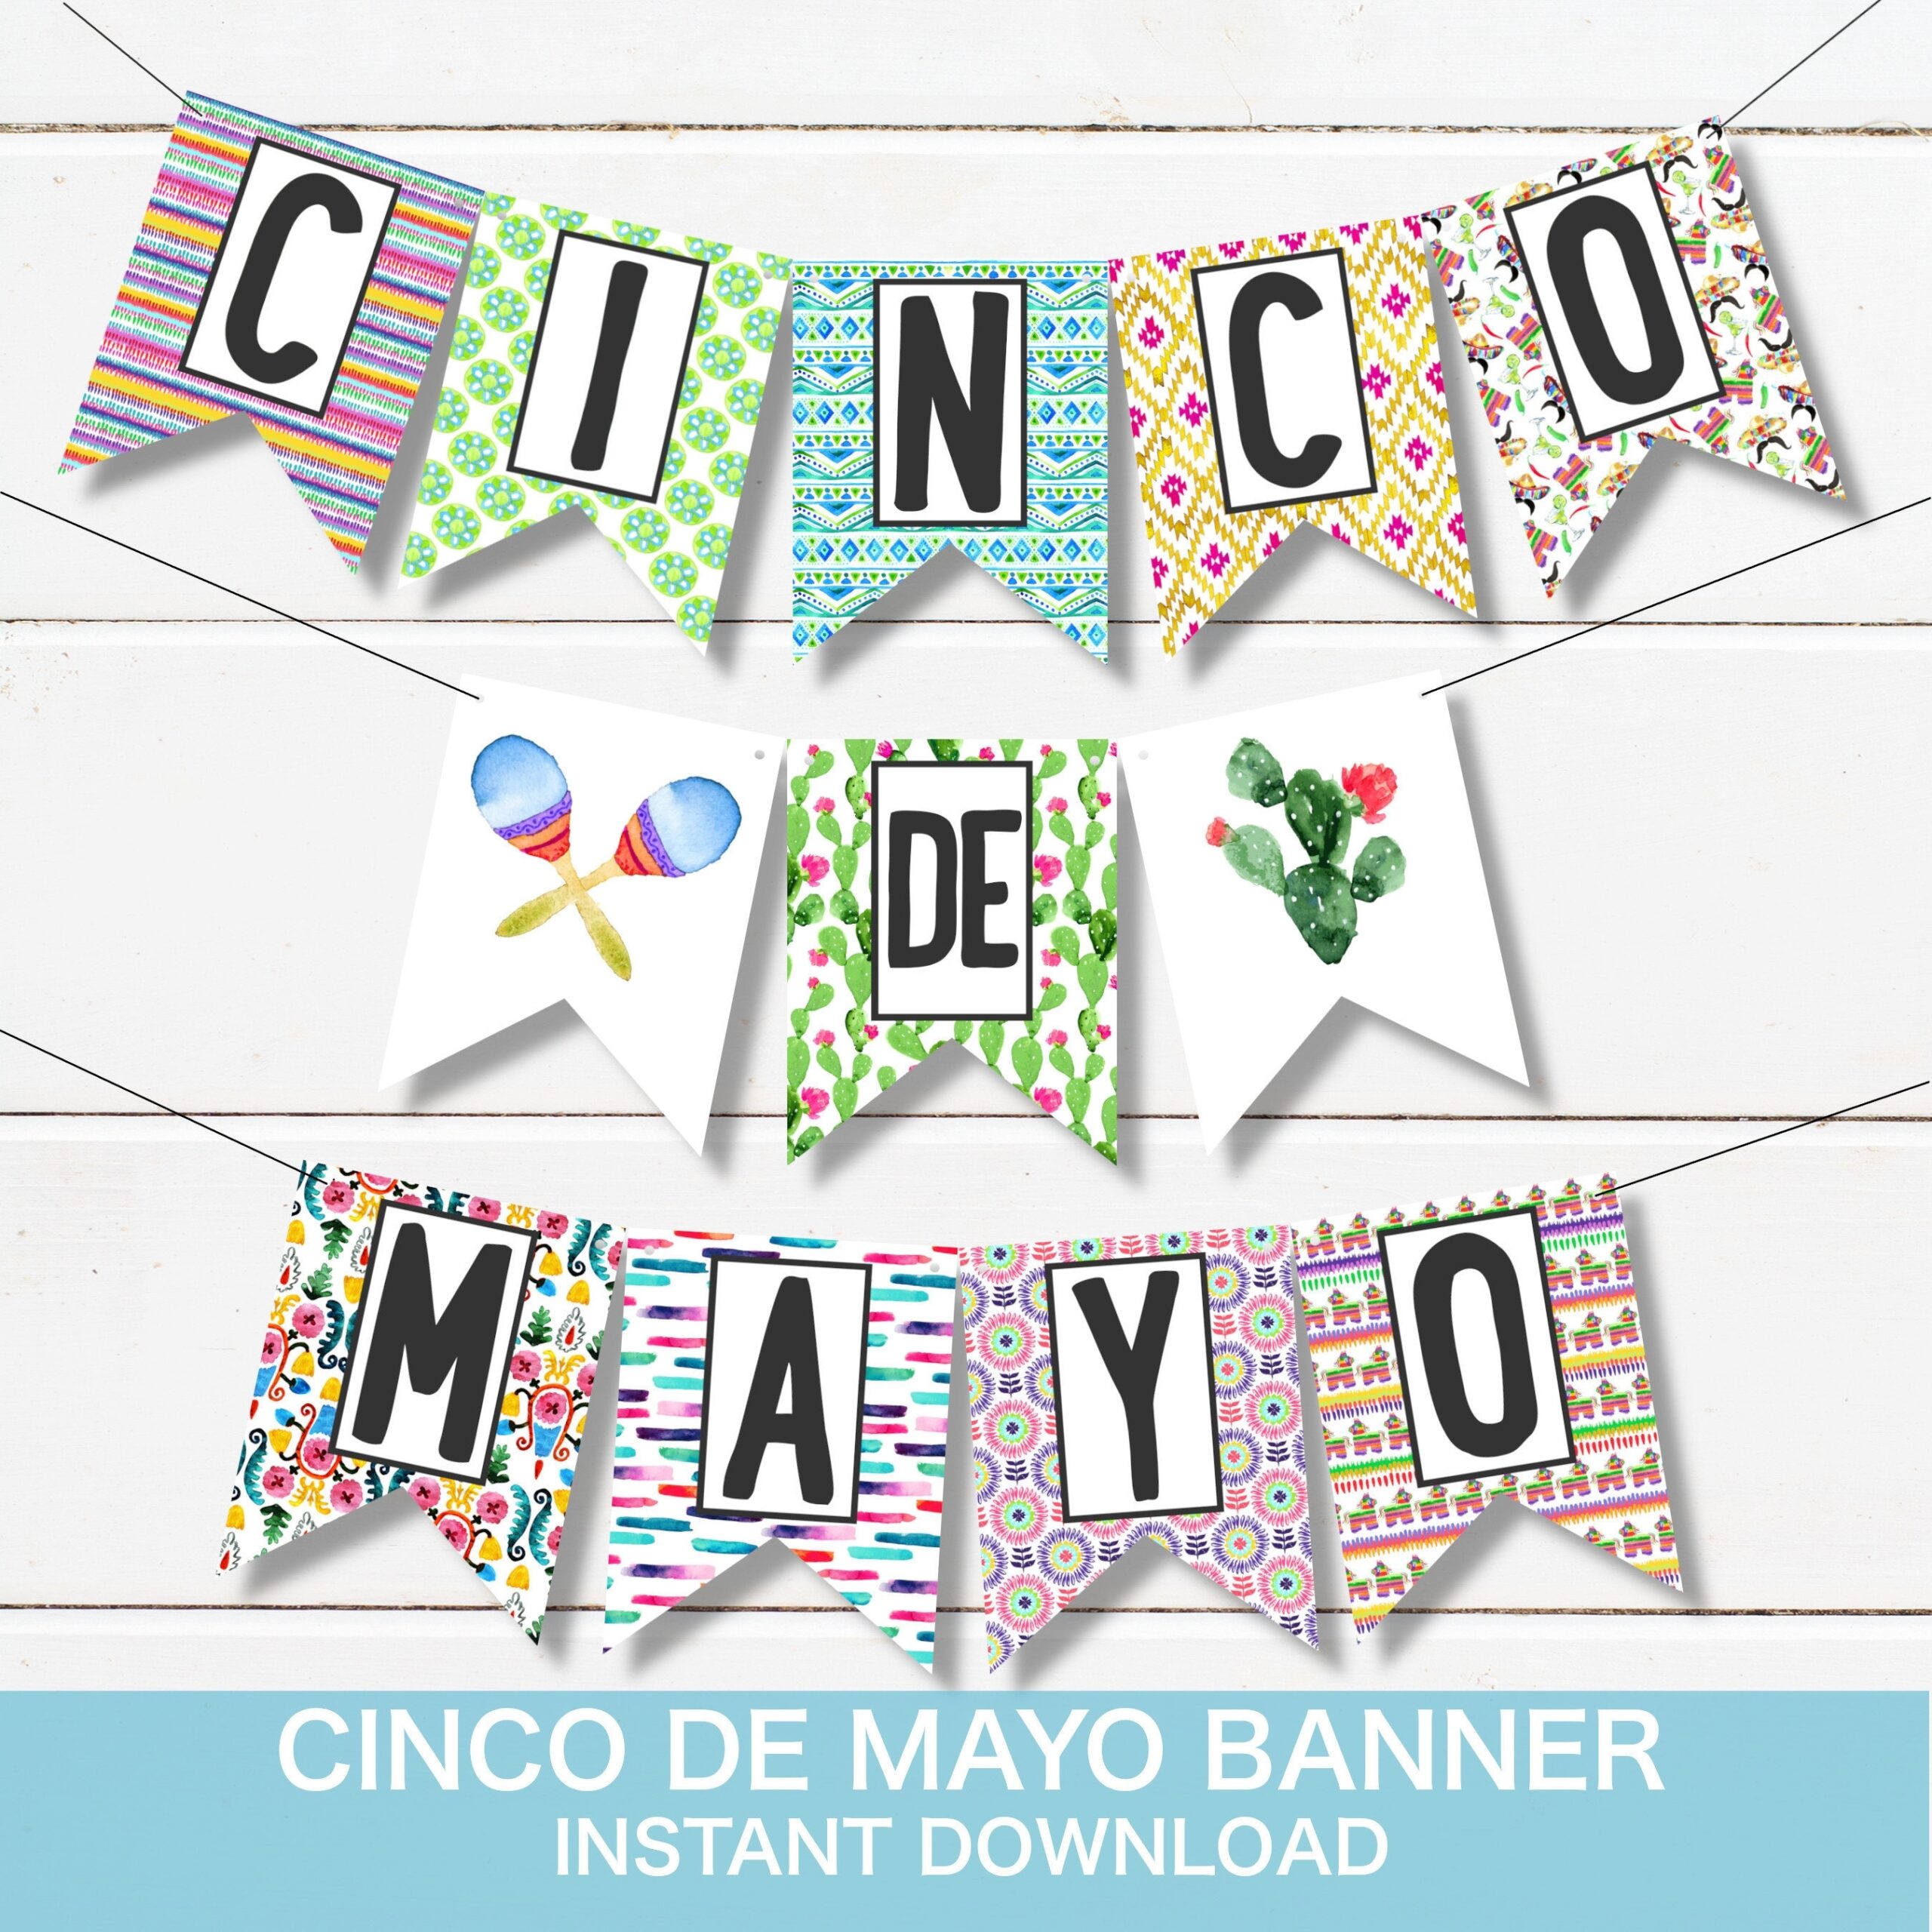 Cinco De Mayo Banner Instant Download Printable Fiesta Decorations Printable Banner DIY Cinco De Mayo Decorations Fiesta Party Etsy